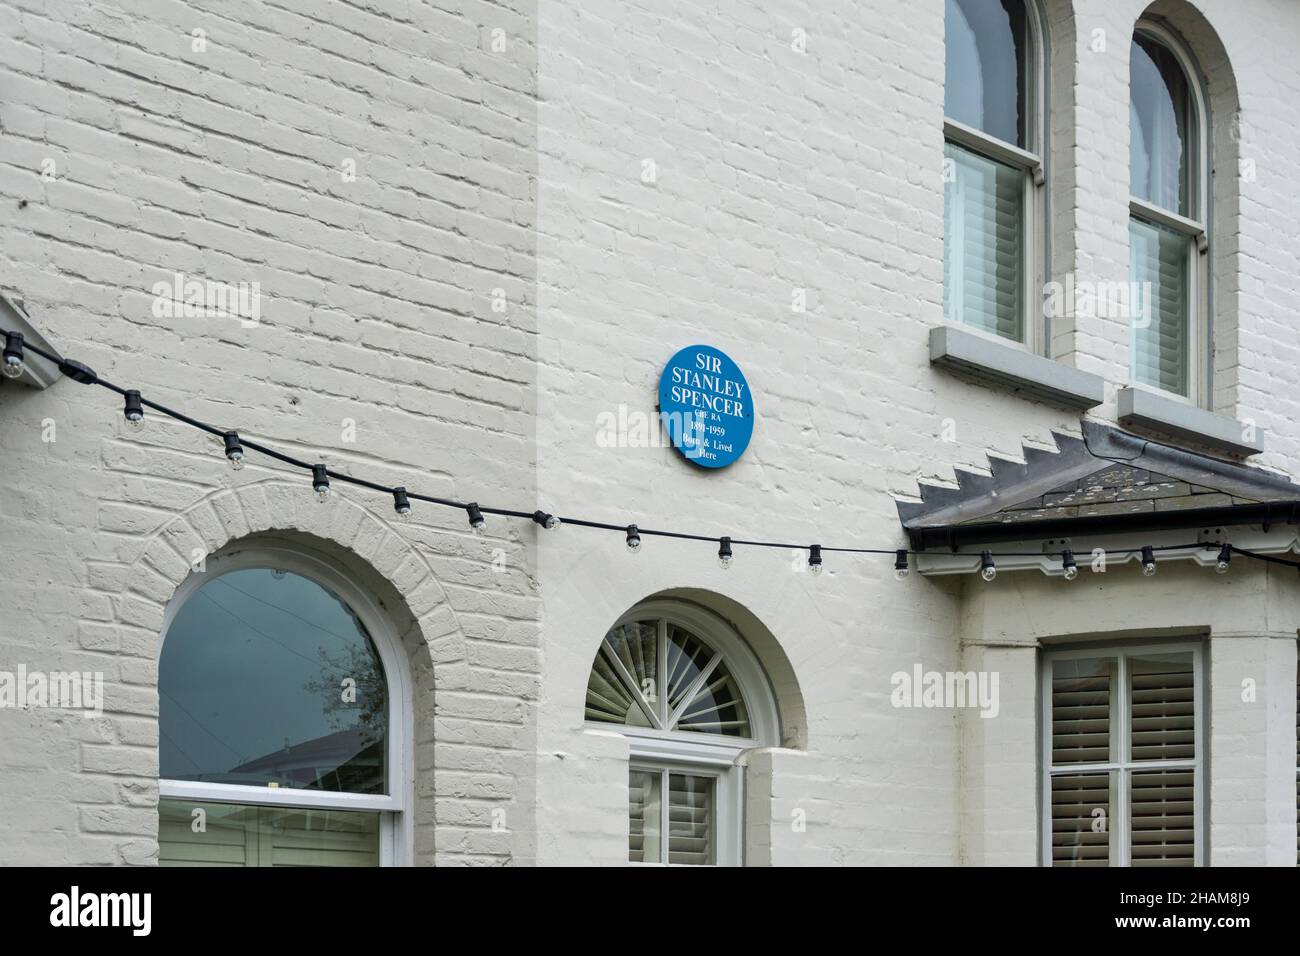 Ex casa dell'artista britannico Stanley Spencer, commemorato con una targa blu, nel villaggio di Cookham, Berkshire, Regno Unito Foto Stock